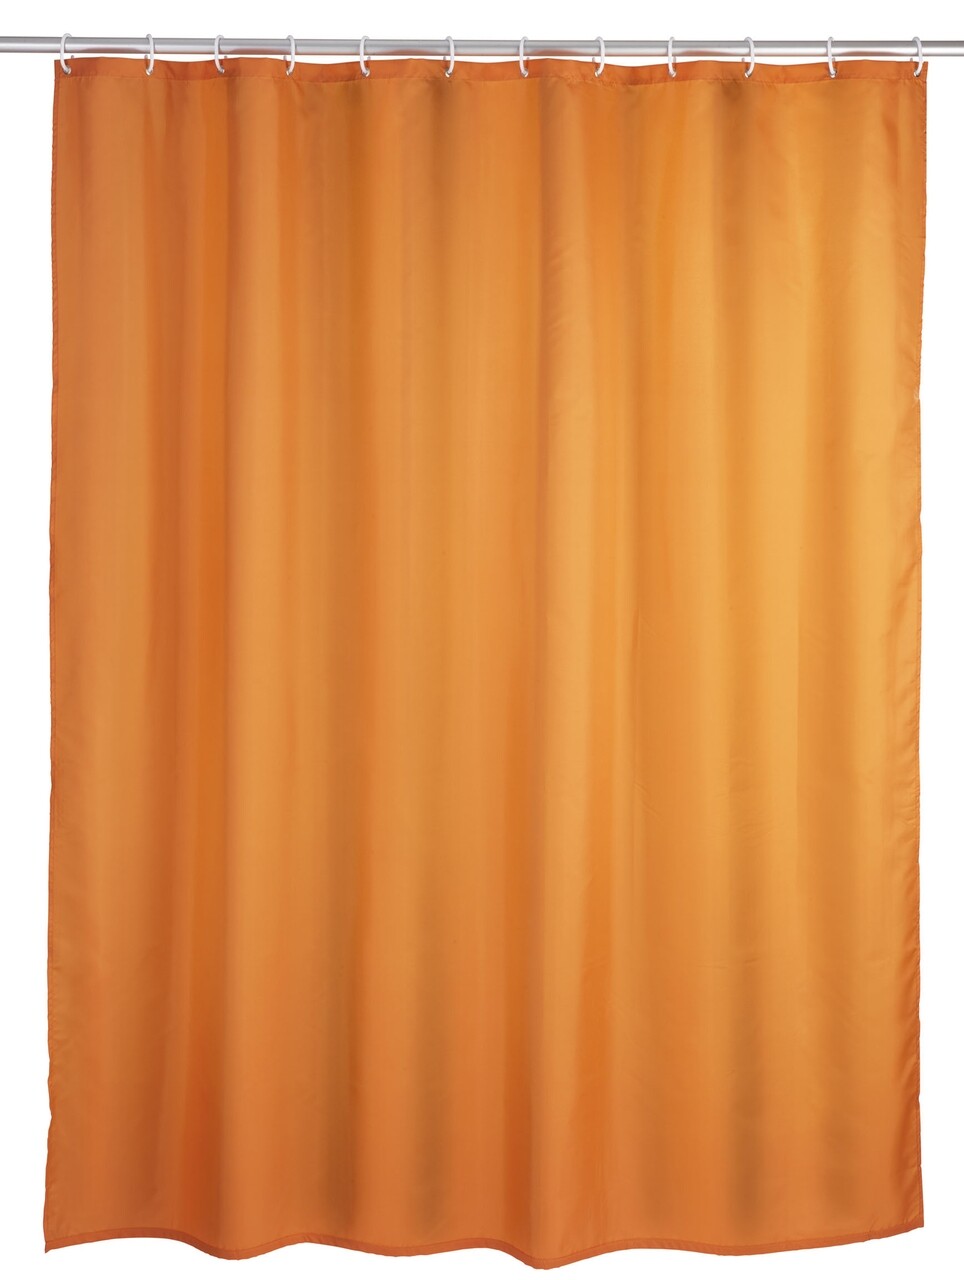 Wenko Zuhanyfüggöny, 180 x 200 cm, poliészter, naranccsárga